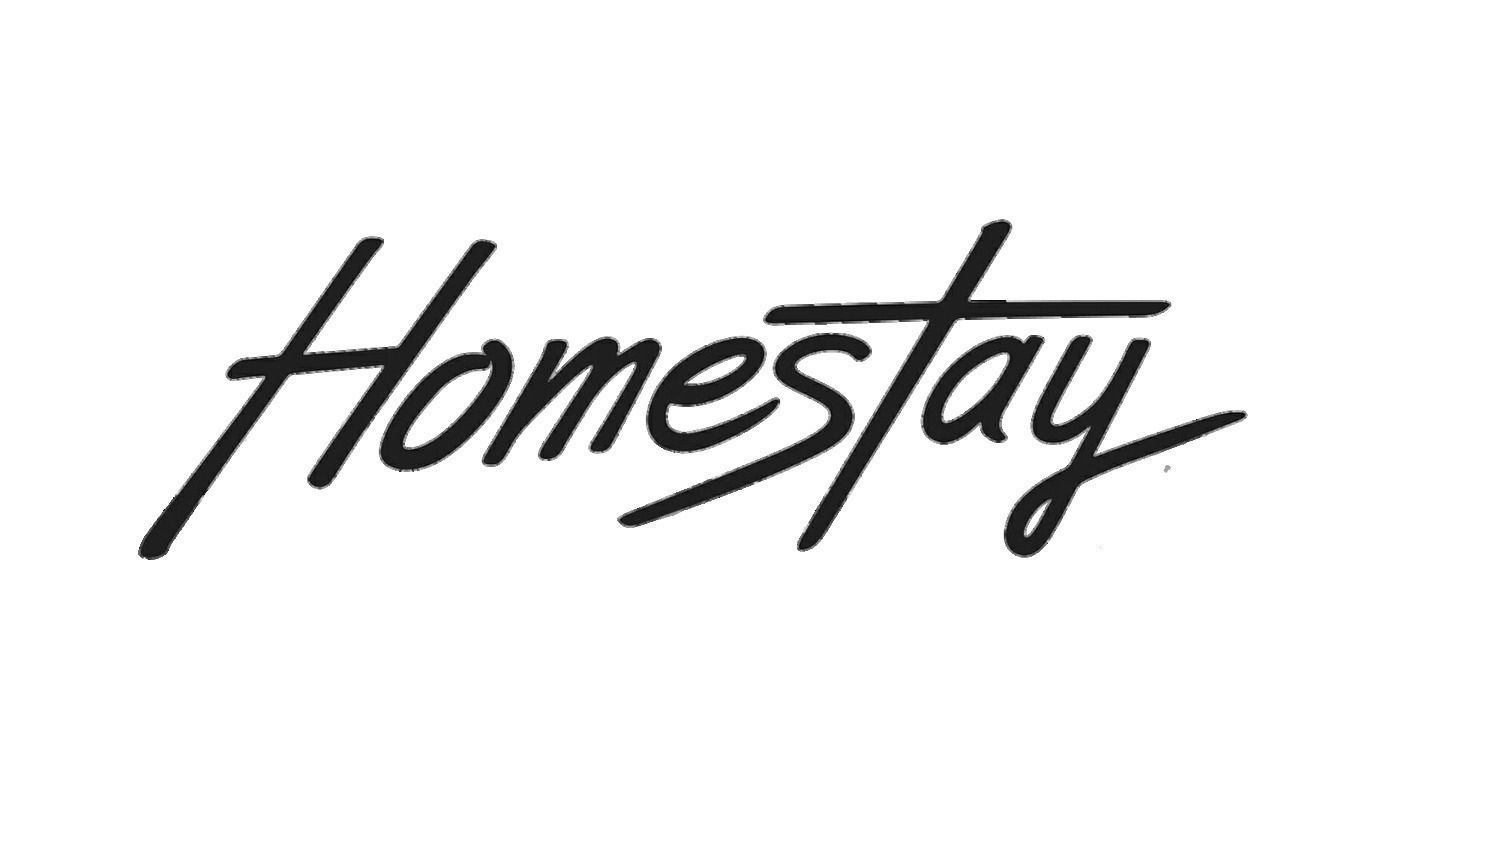 Homestay